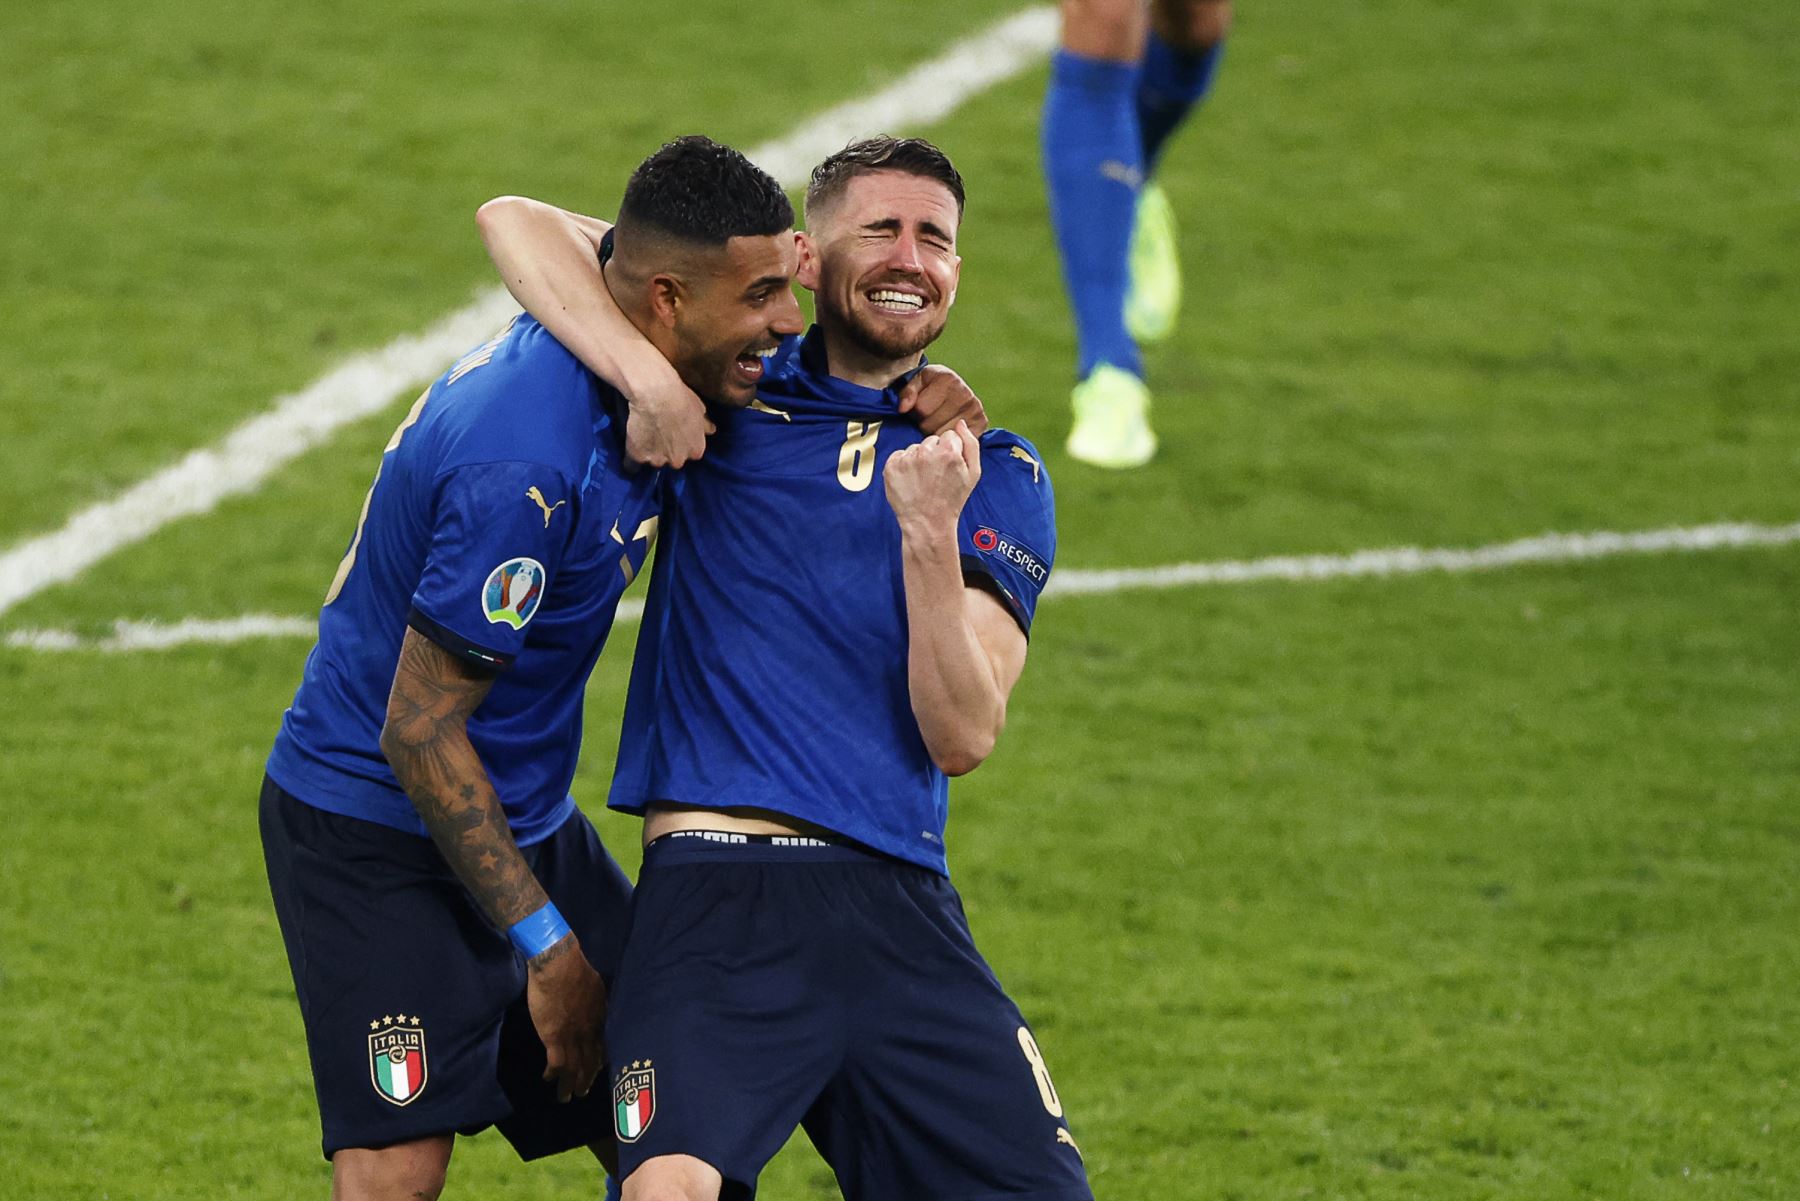 Los jugadores de Italia celebran ganar el partido de fútbol final de la UEFA EURO 2020 entre Italia e Inglaterra en el estadio de Wembley en Londres el 11 de julio de 2021